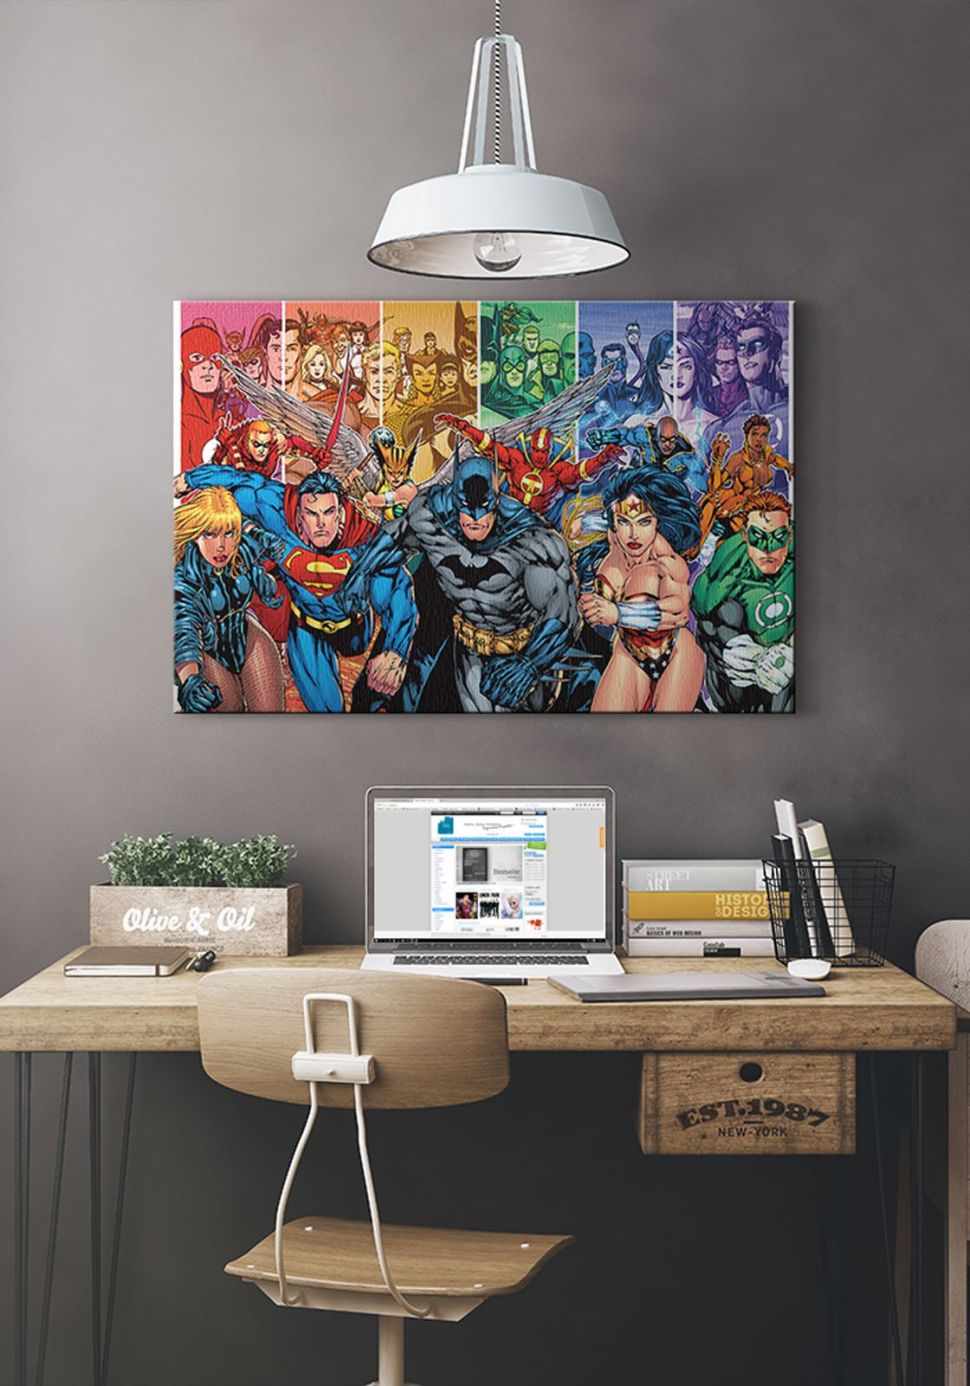 Justice League od DC Comics na obrazie powieszonym w biurze nad biurkiem